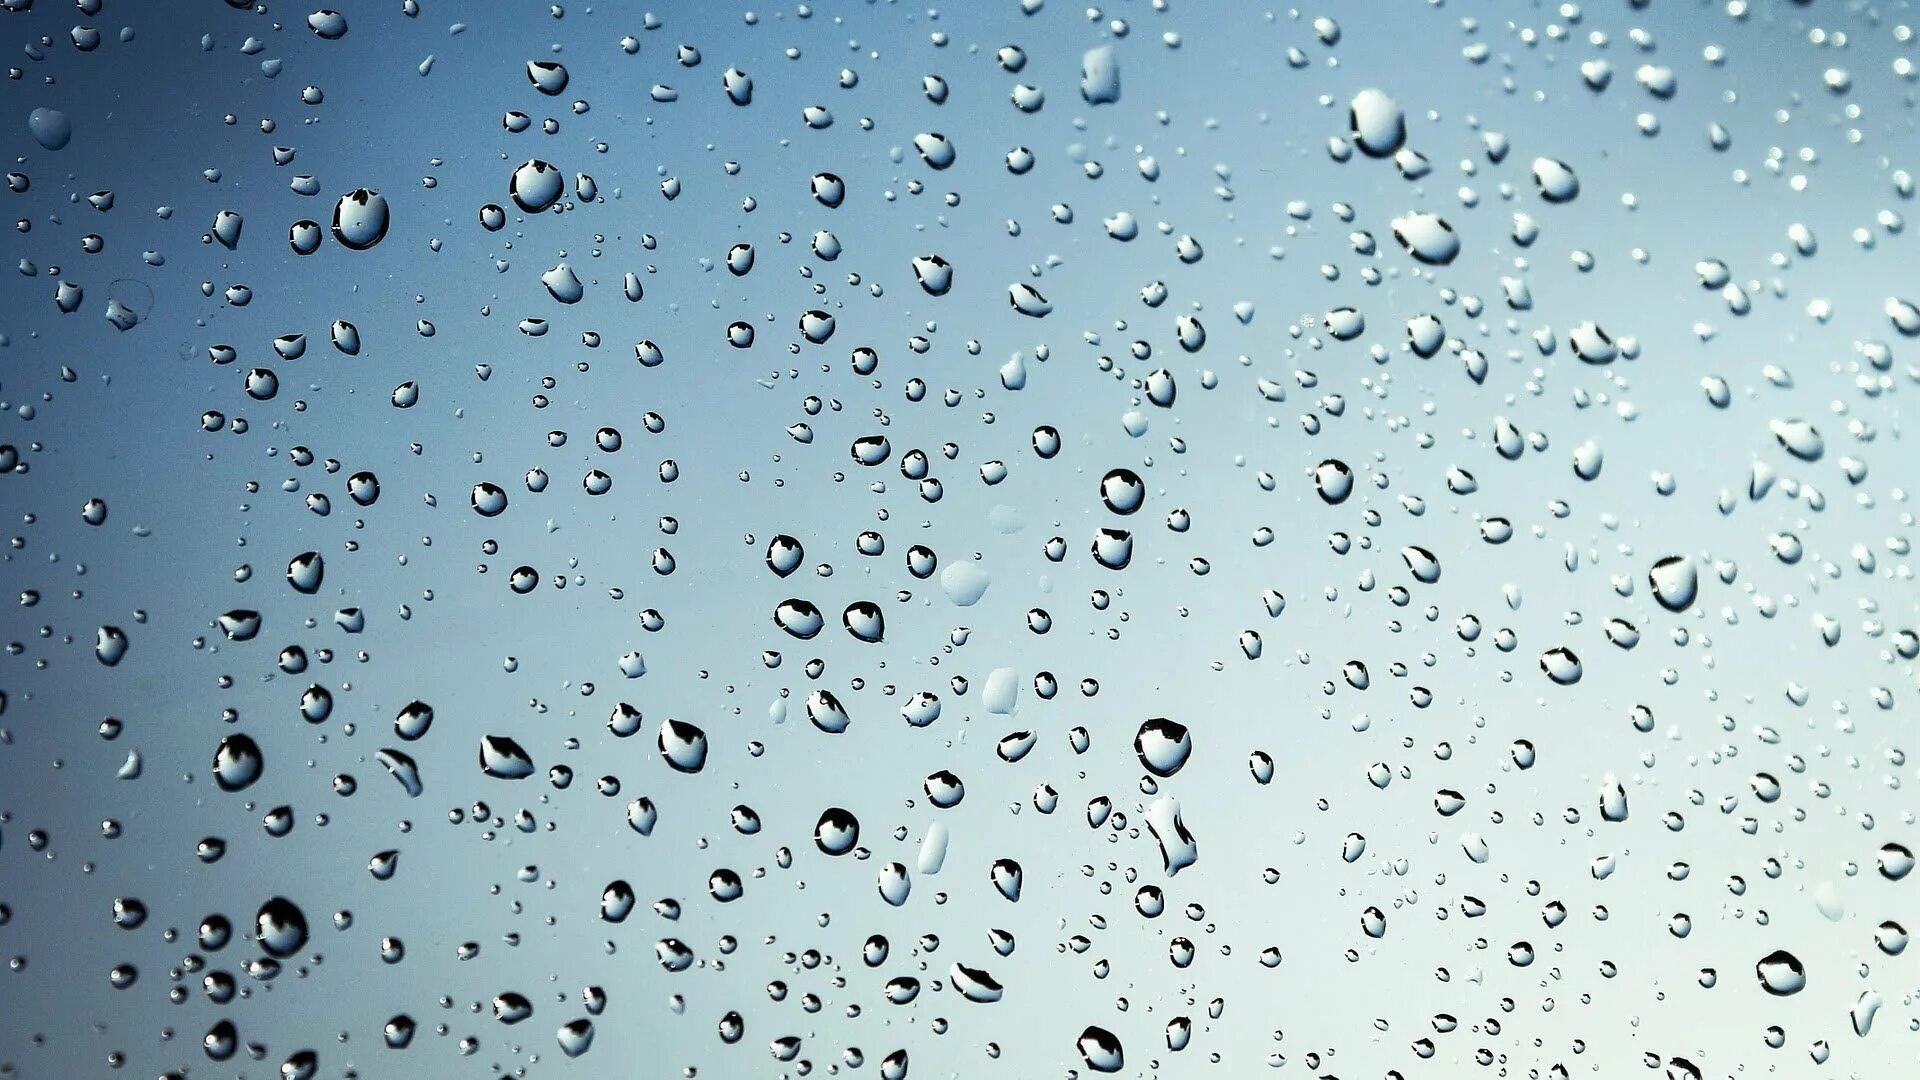 Капали дождевые капли. Капли на стекле. Капли дождя. Капли воды на стекле. Капельки дождя на стекле.